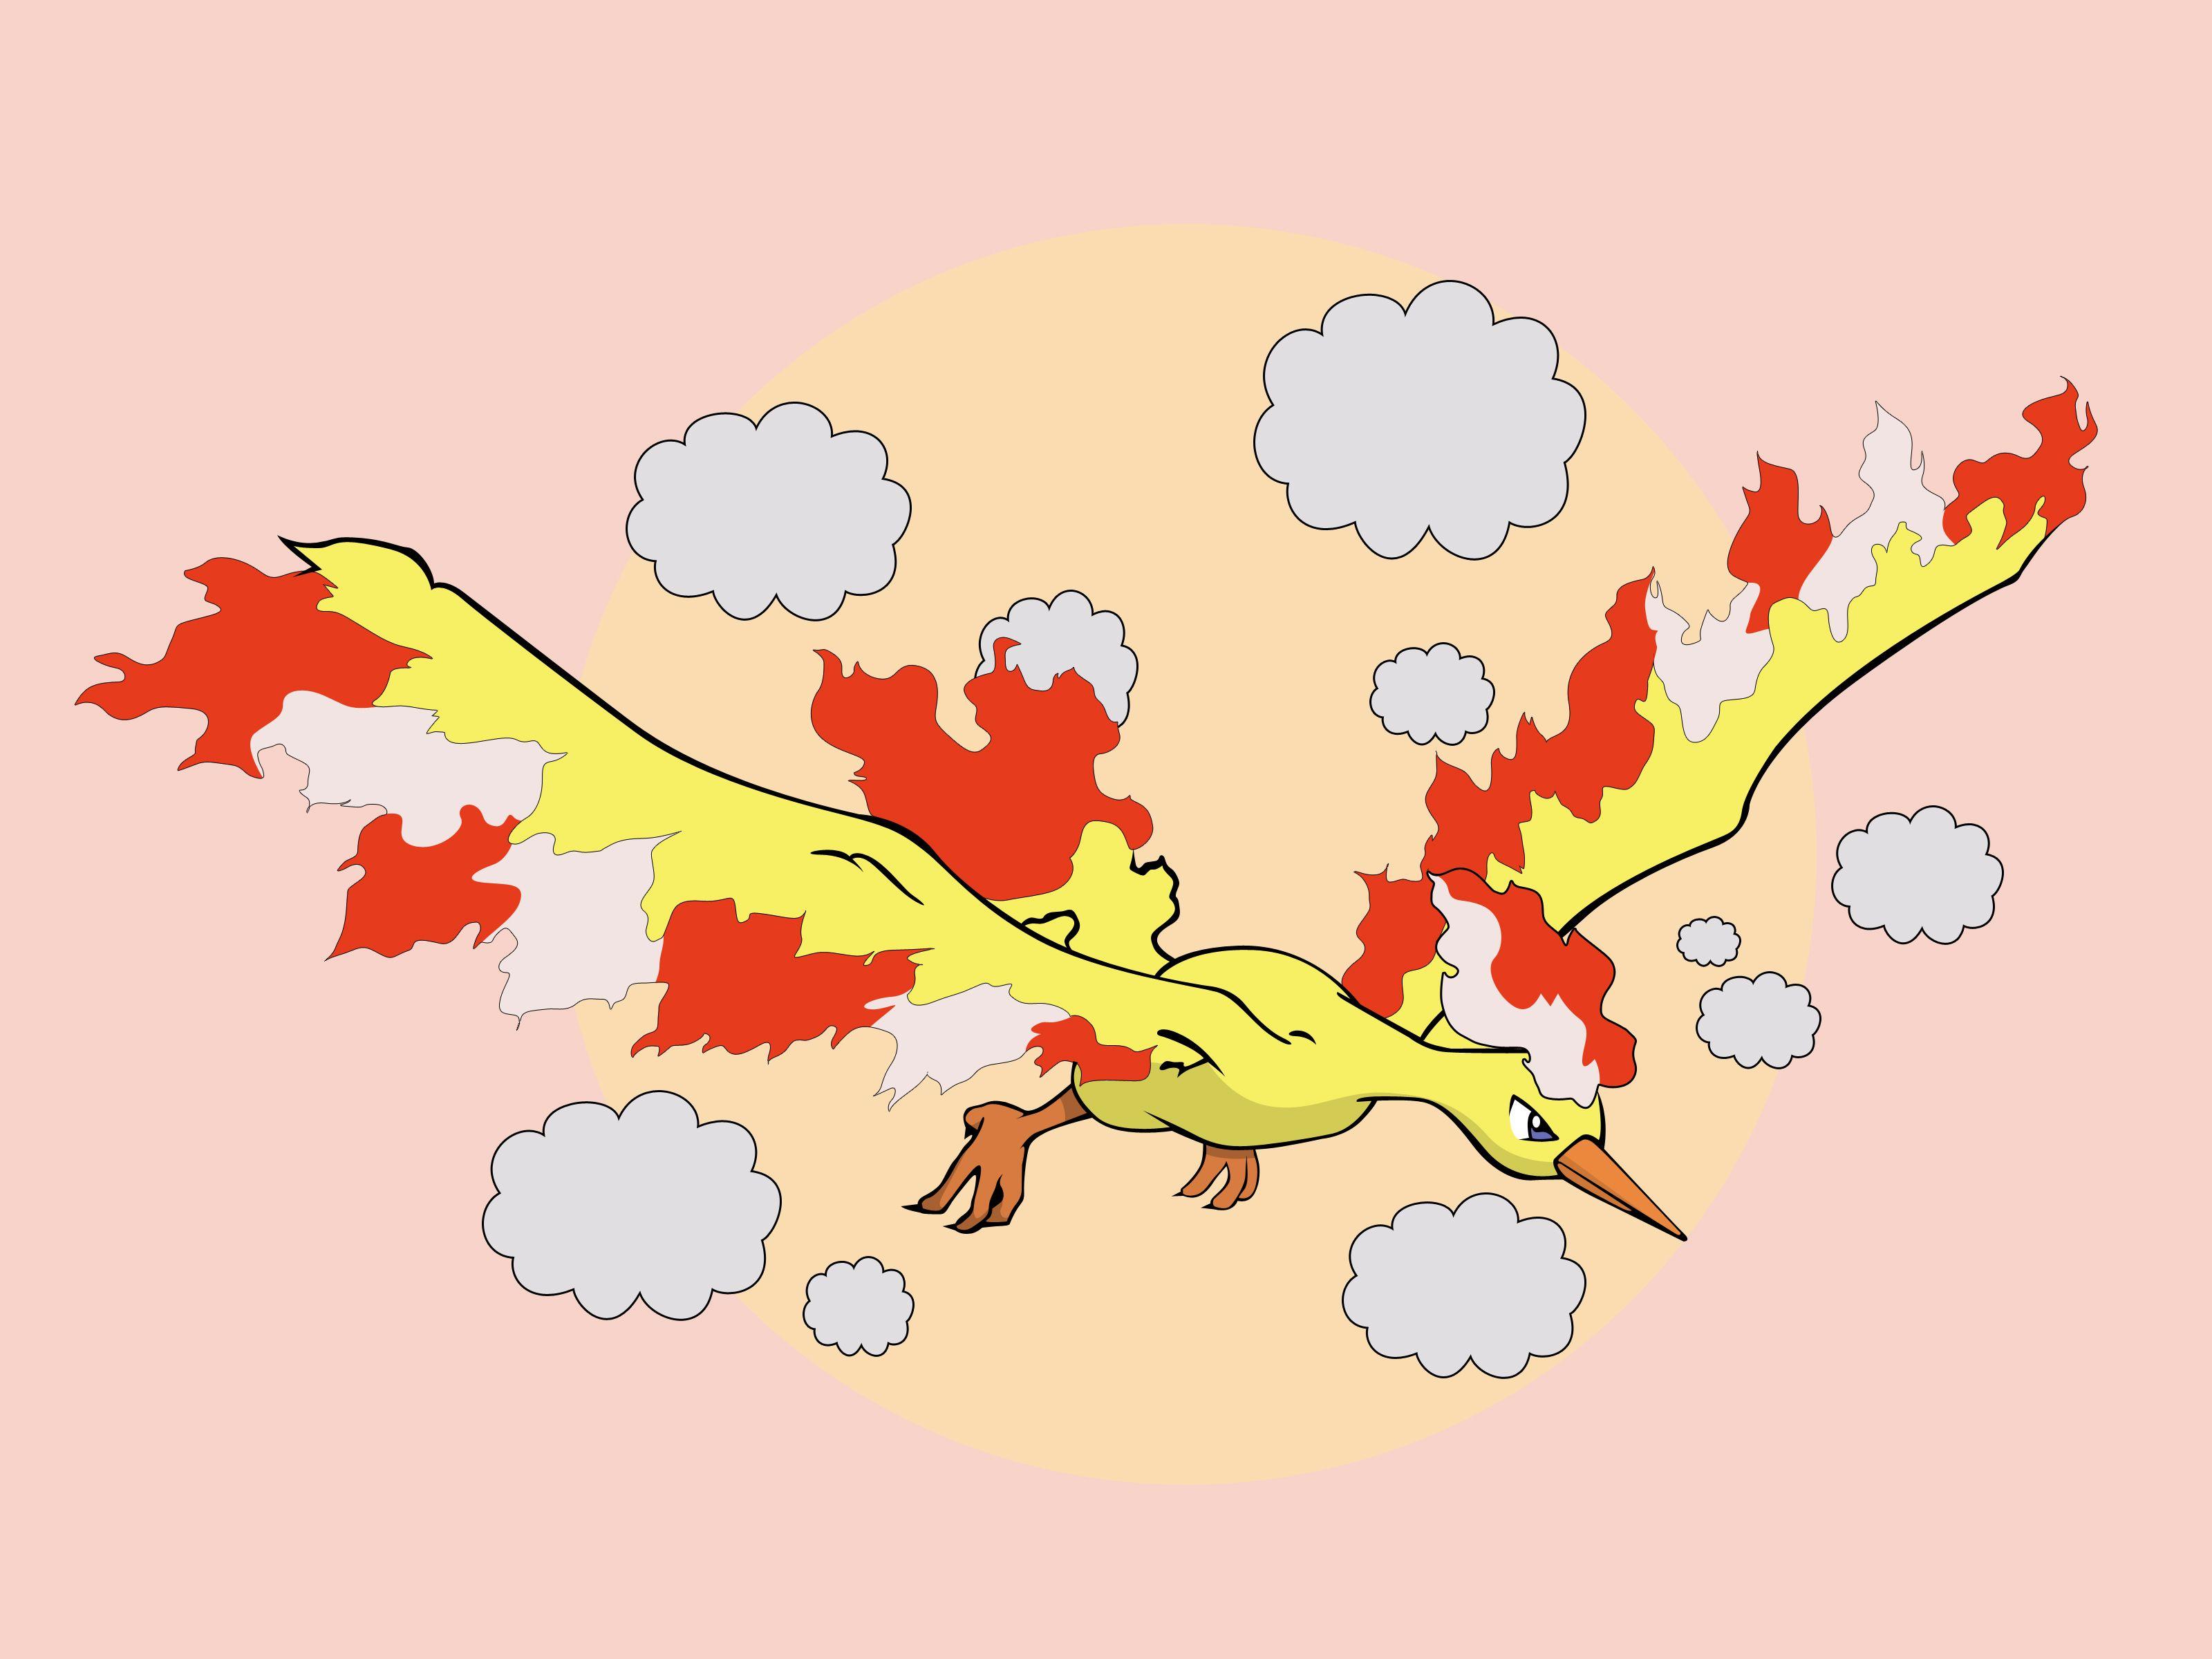 Ways to Draw the Three Legendary Birds from Pokémon